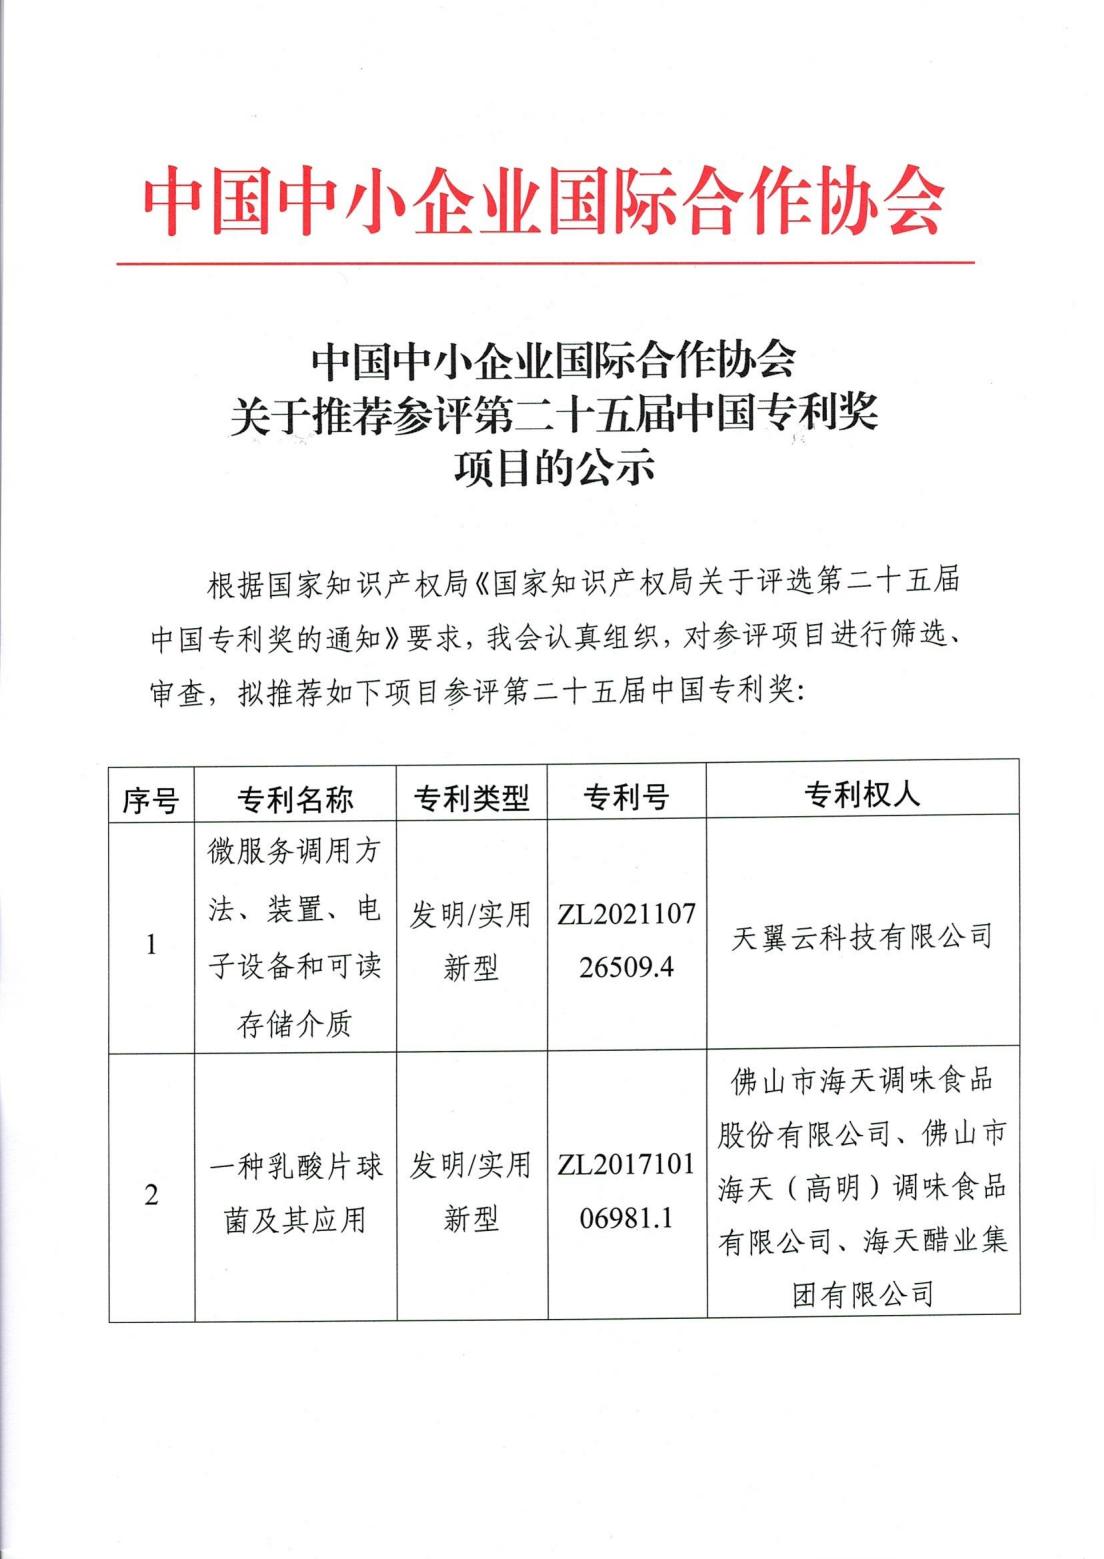 中国中小企业国际合作协会关于推荐参评第二十五届中国专利奖项目的公示（盖章扫描件）_00.jpg